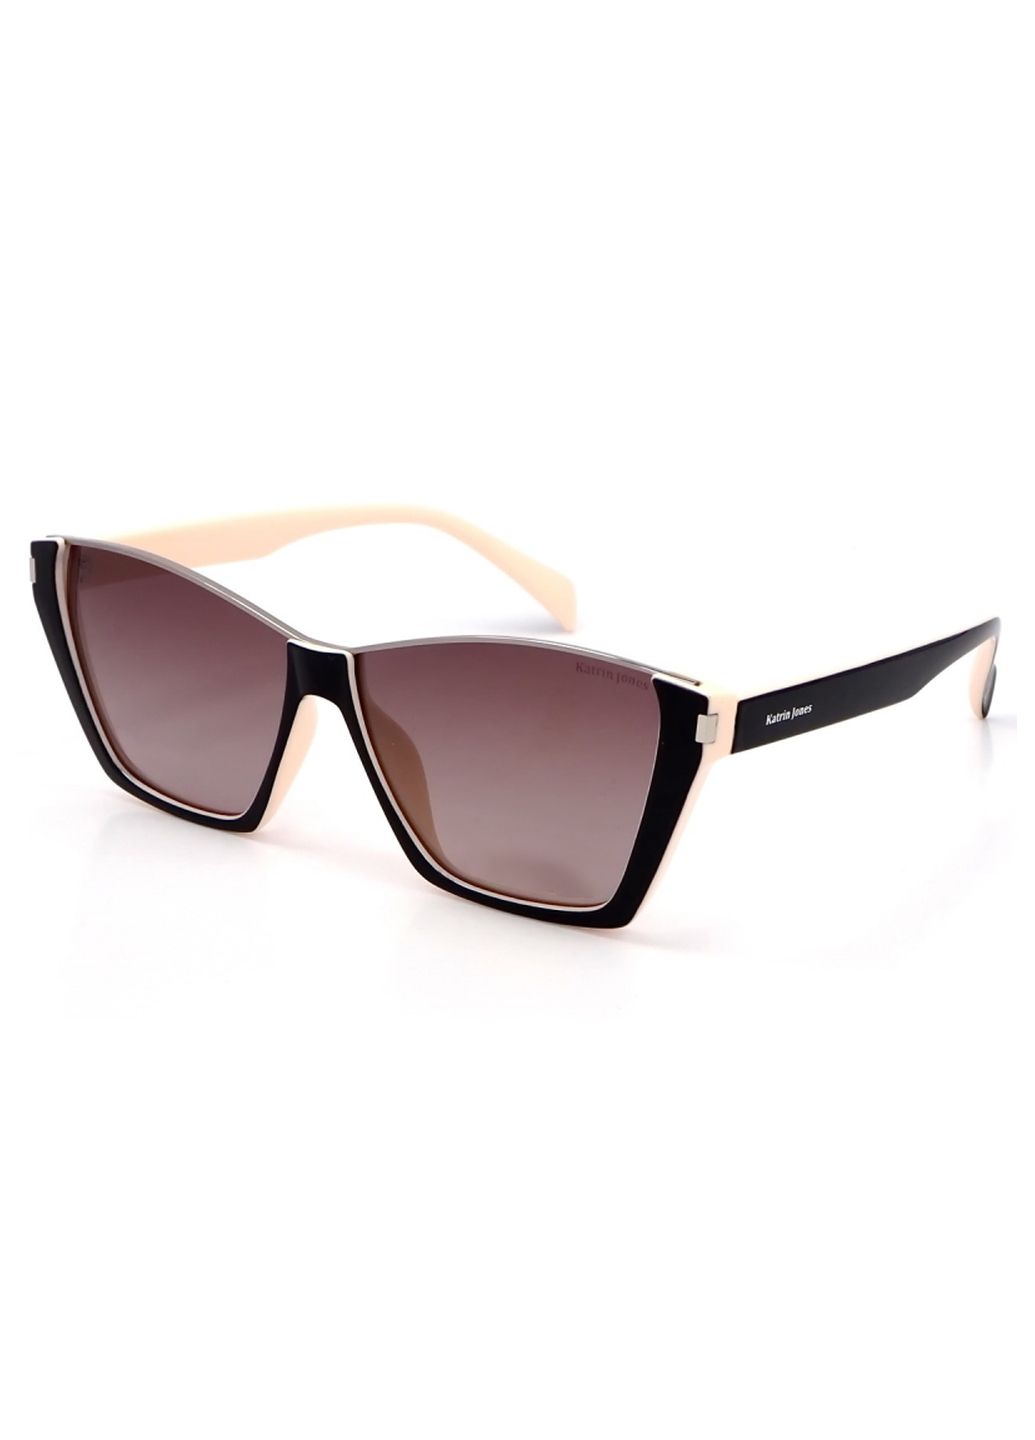 Купить Женские солнцезащитные очки Katrin Jones с поляризацией KJ0858 180041 - Черный в интернет-магазине